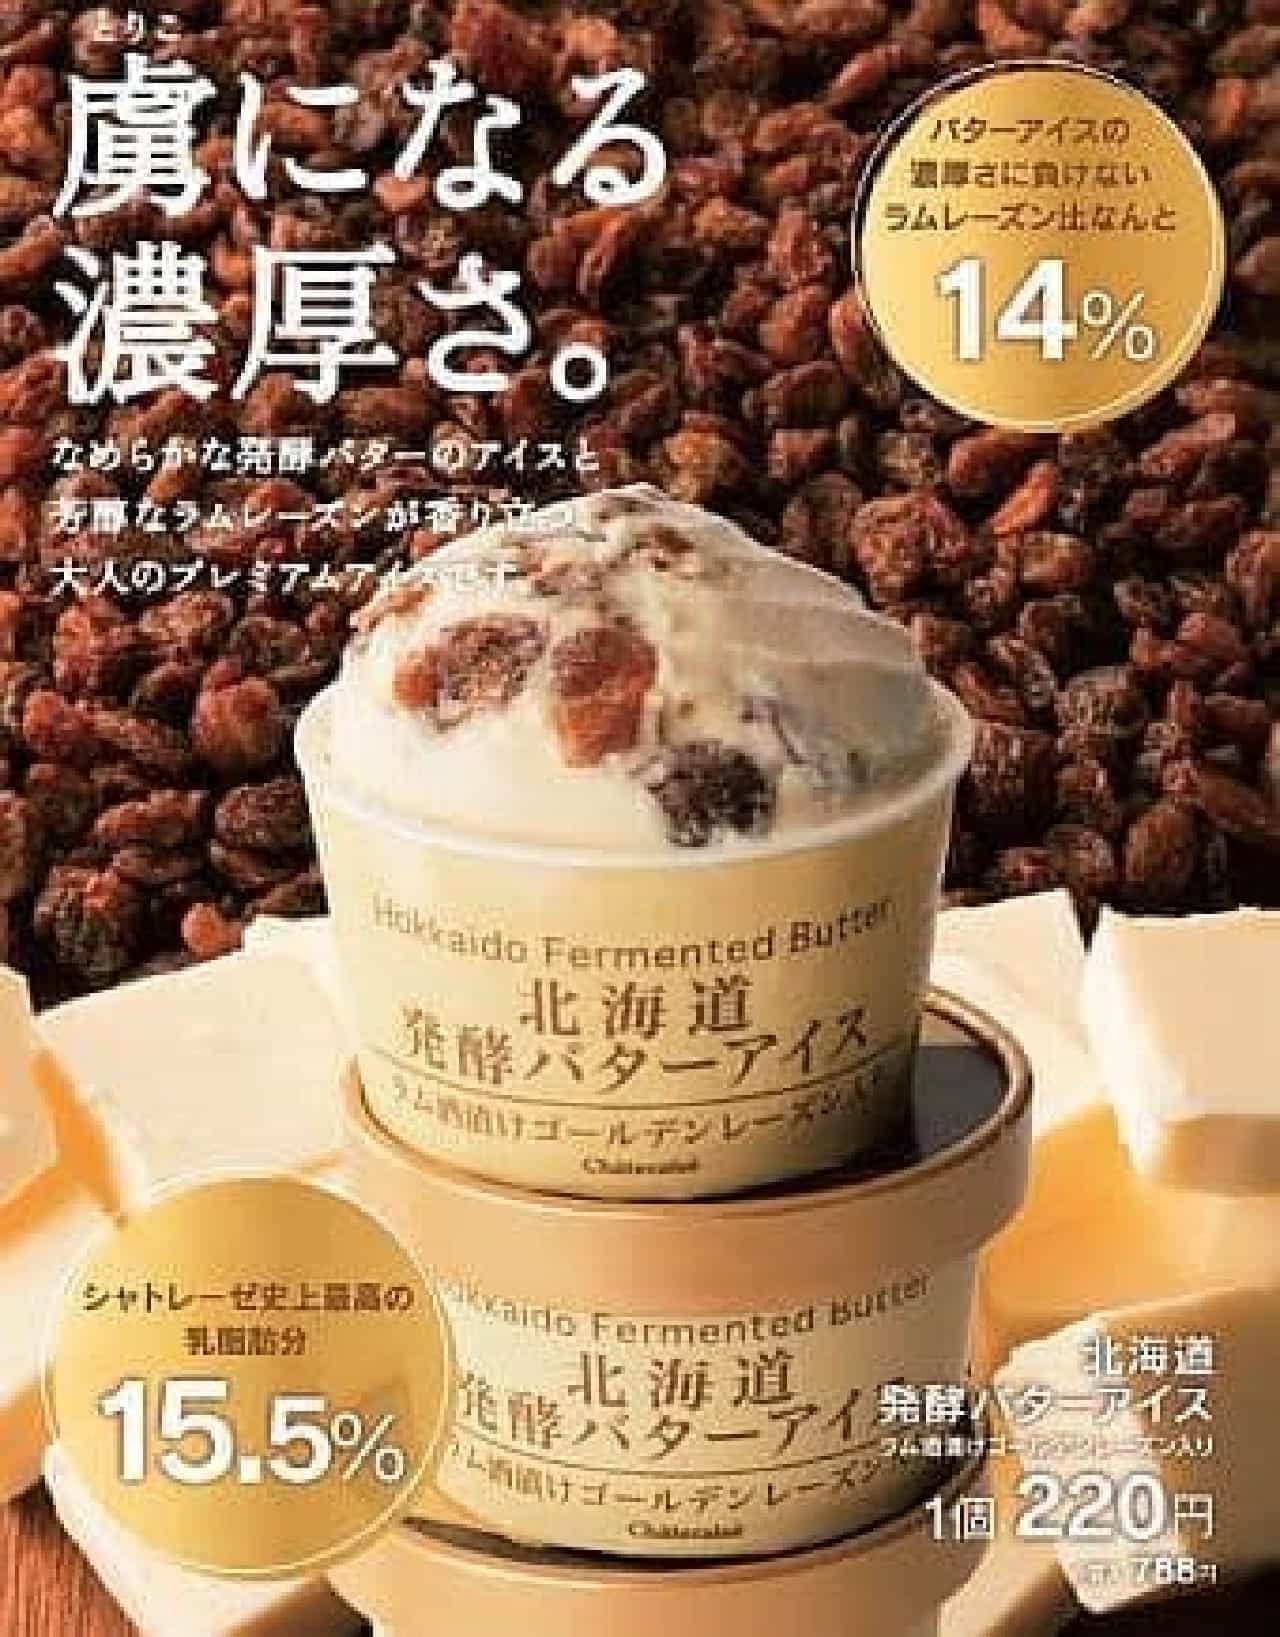 シャトレーゼ「北海道発酵バターアイス」